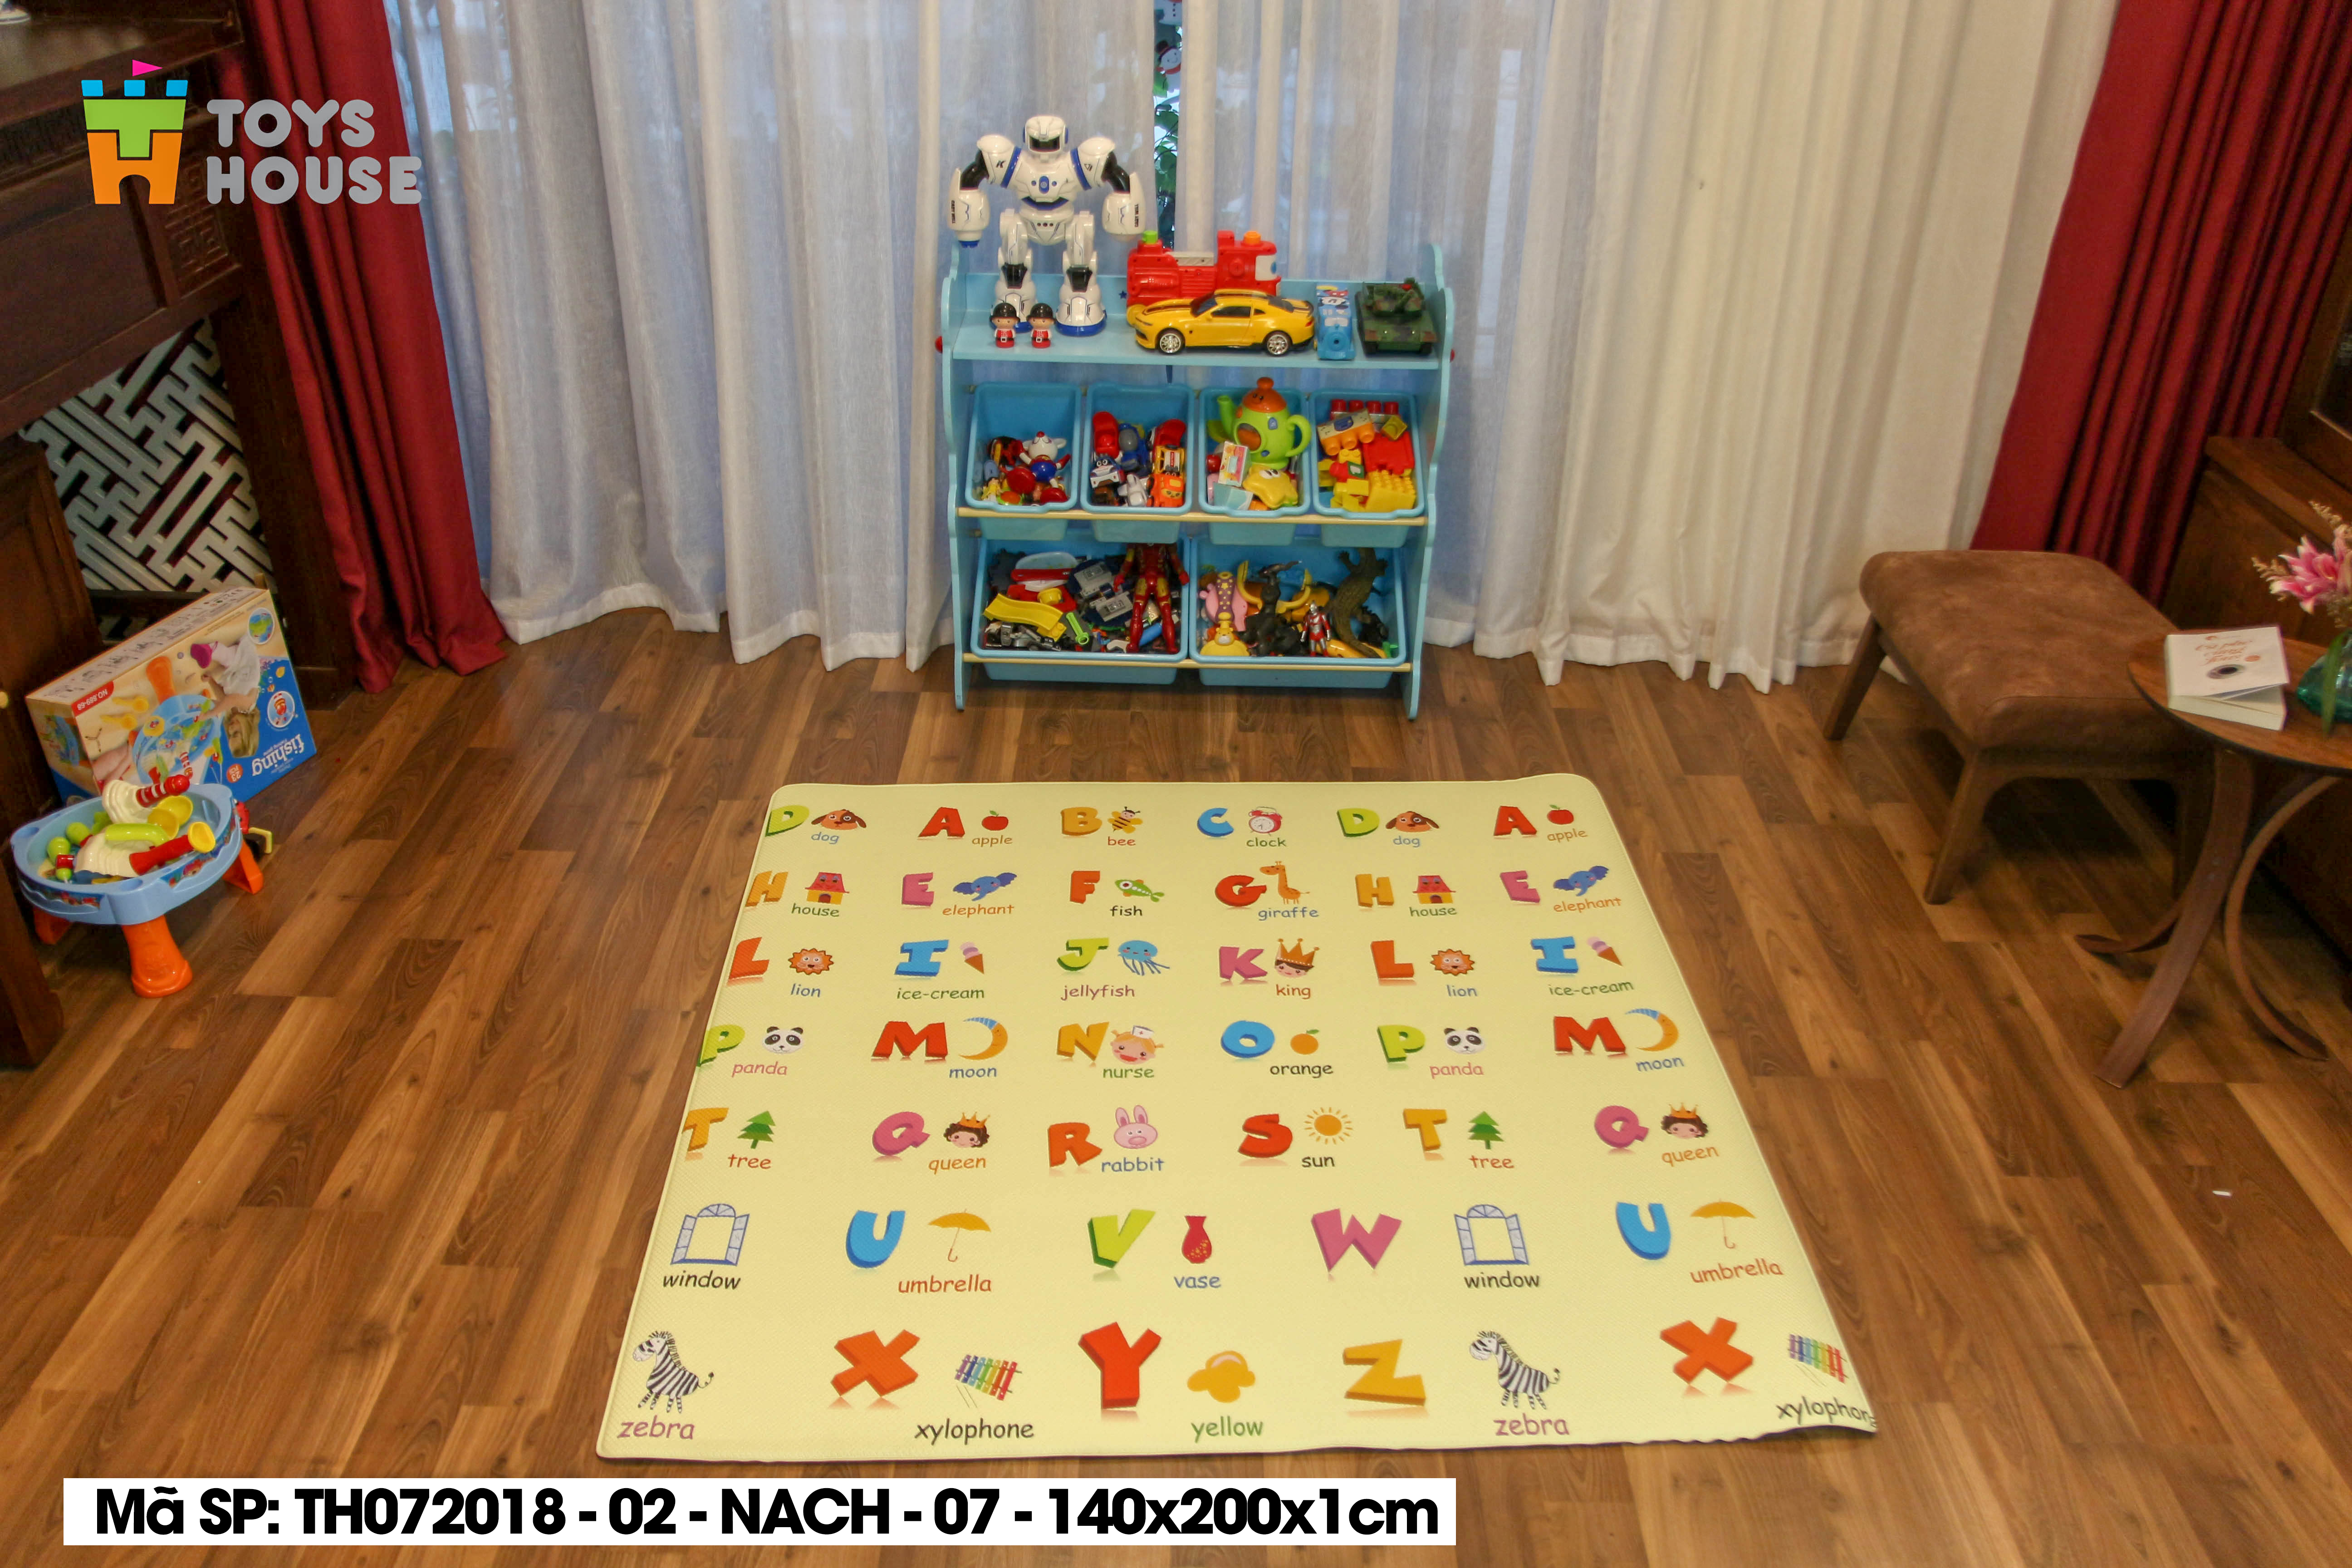 Nơi bán Thảm nằm chơi cho trẻ em Silicon Toys House TH072018-02-NACH-07 chính hãng, giá rẻ hợp lý nhất trên thị trường